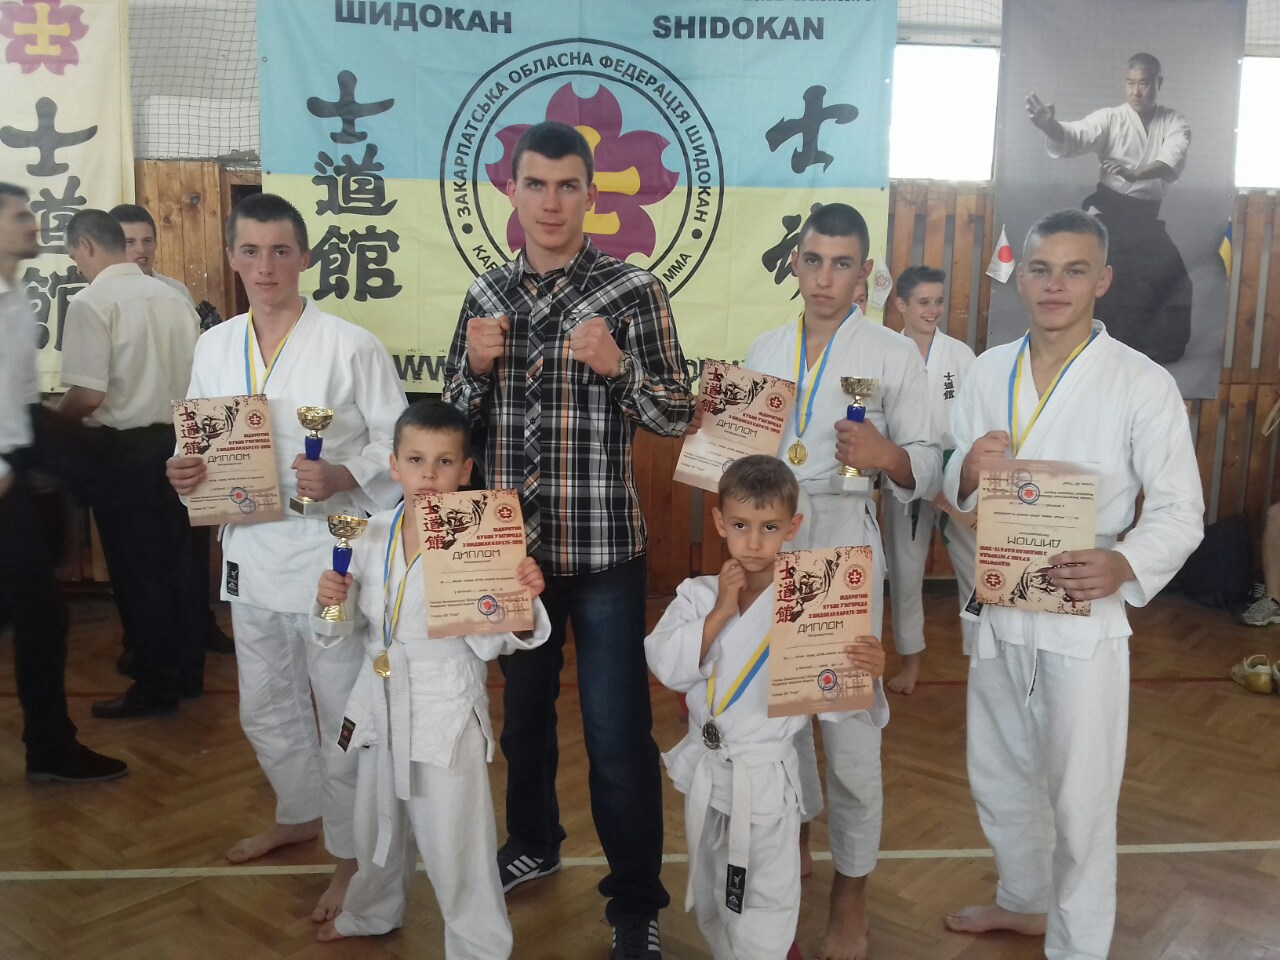 Хустяни вибороли всі призові місця на чемпіонаті області з Шидокан карате